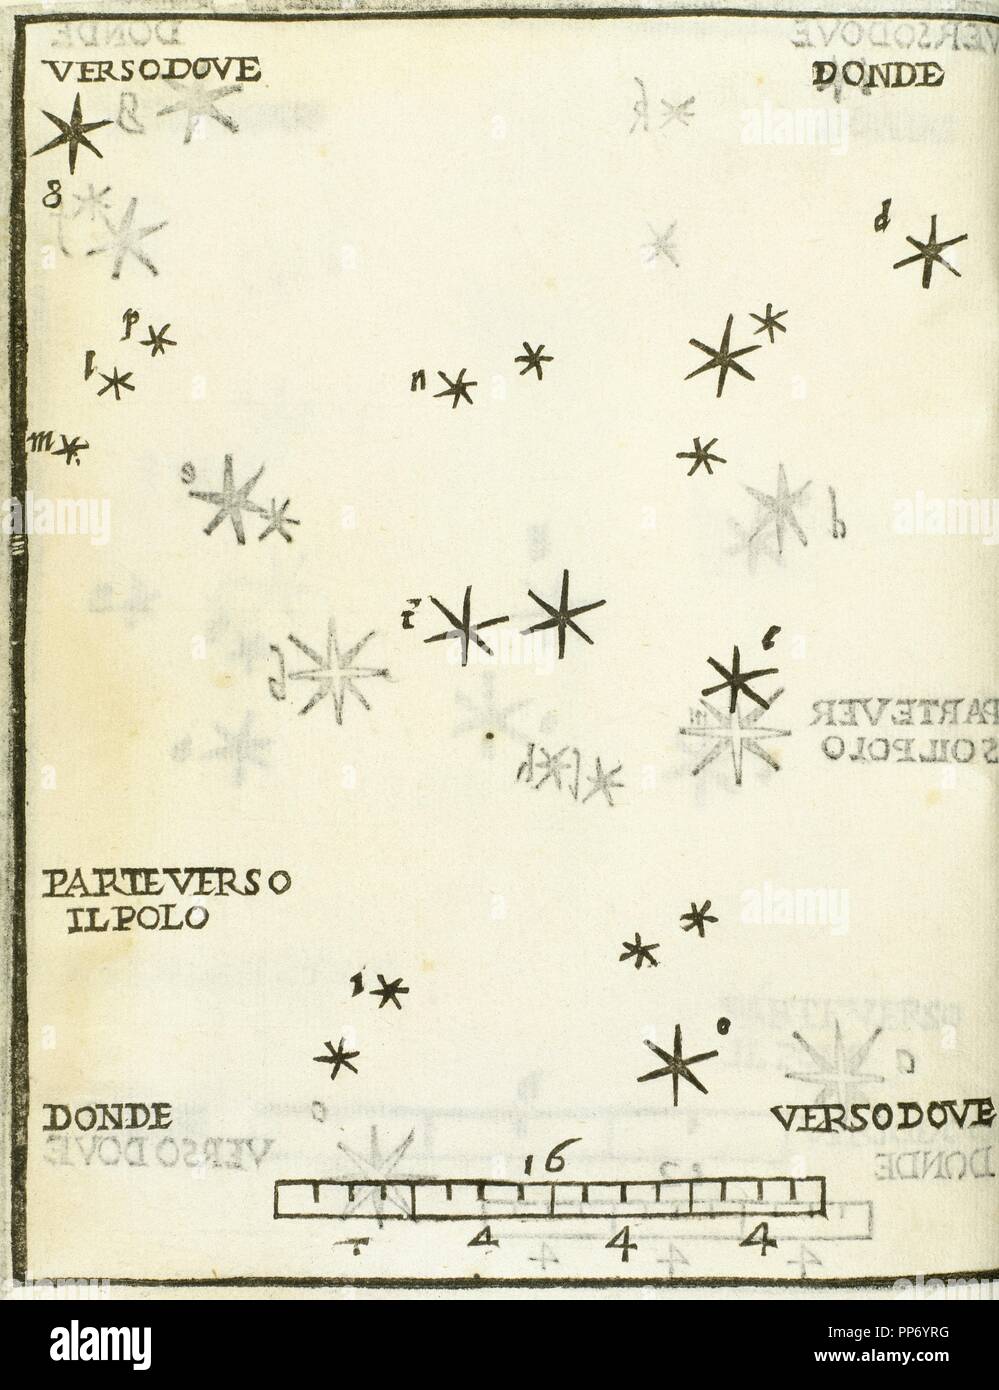 D'Andromède. Gravure de l'année 1559 dans lequel la structure de la constellation est représentée. Il appartient à l'astronomie livre 'Dele Stelle Fisse', le travail d'Alejandro Picolomini, publiée à Venise. Banque D'Images